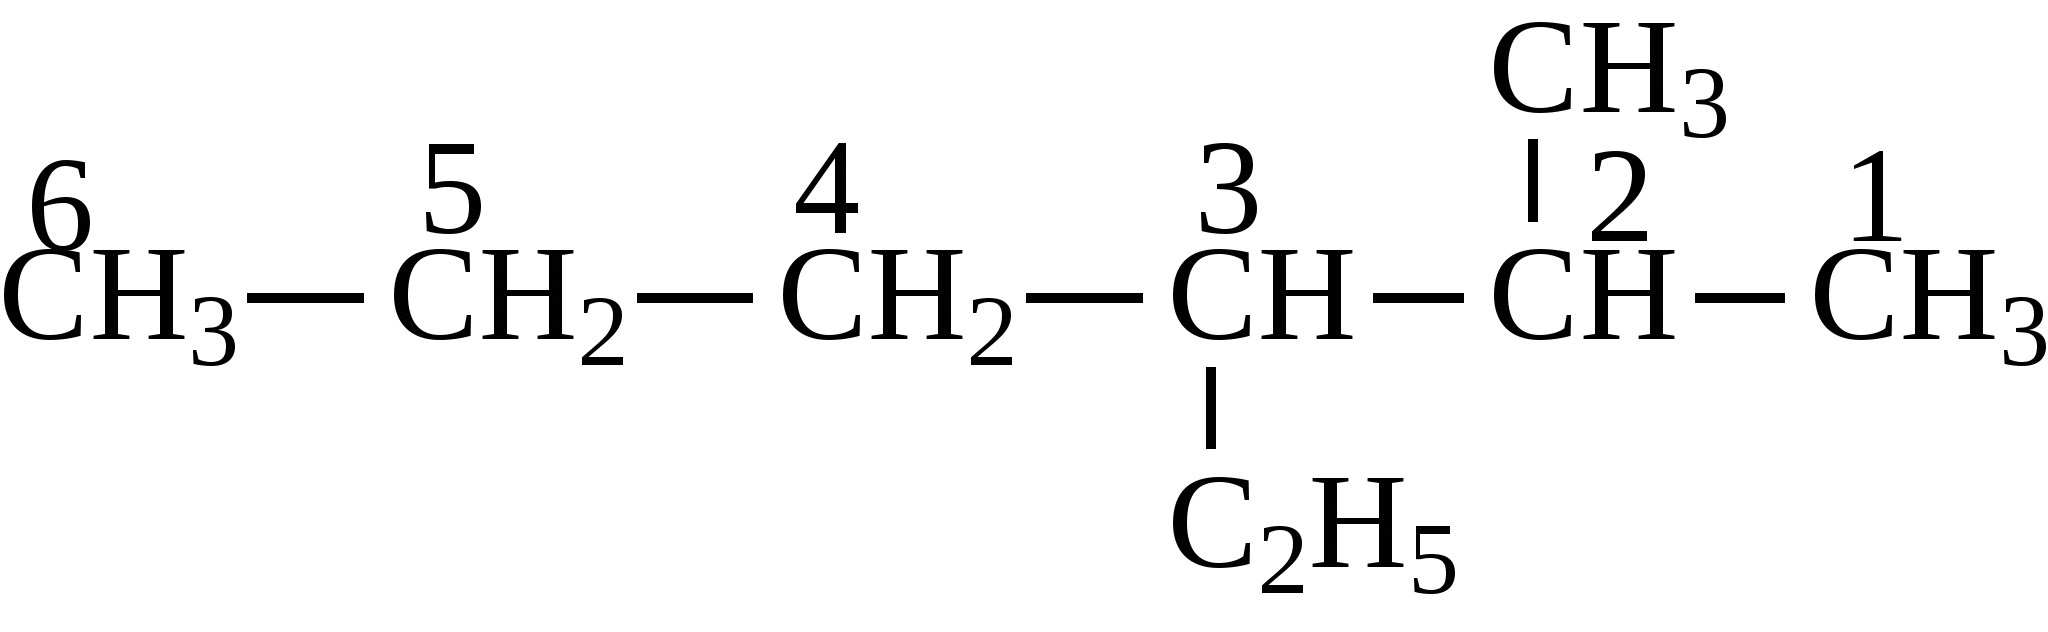 2 этил гексан. 2 Метил 3 этилгексан формула. 2 Метил 3 этилгексан структурная формула. 2 Метил 3 этил гексан структурная формула. 2 Метил 2 этилгексан.